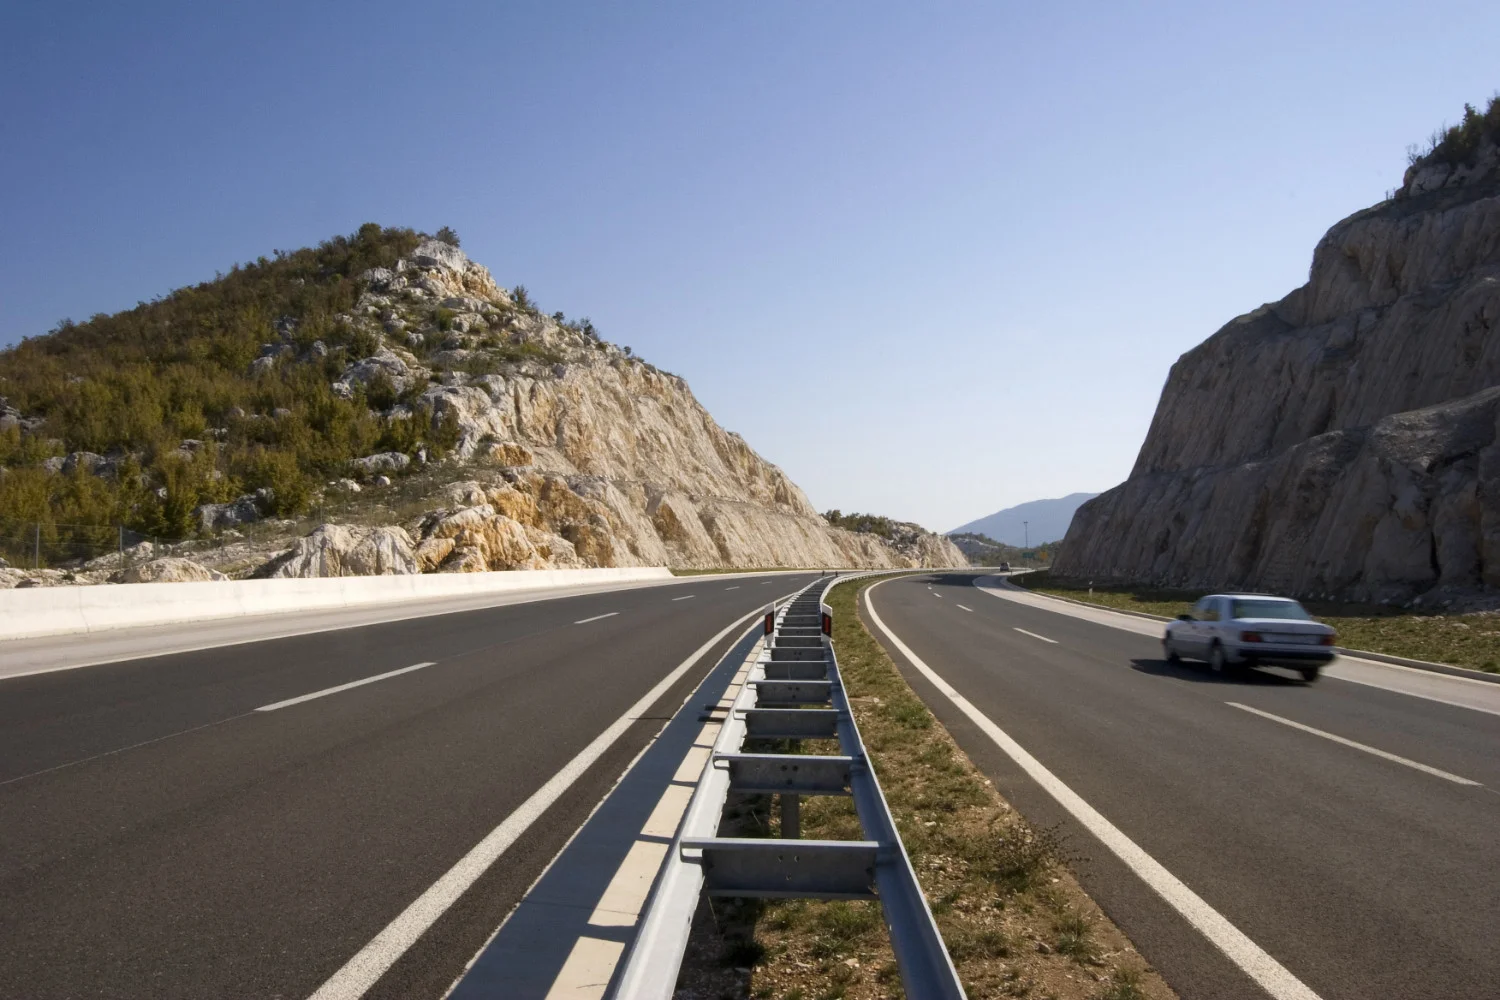 Autostrăzile croate sunt cunoscute pentru limitele lor ridicate de viteză. Limita de viteză pe autostrada din Croația este de 130 km/h.